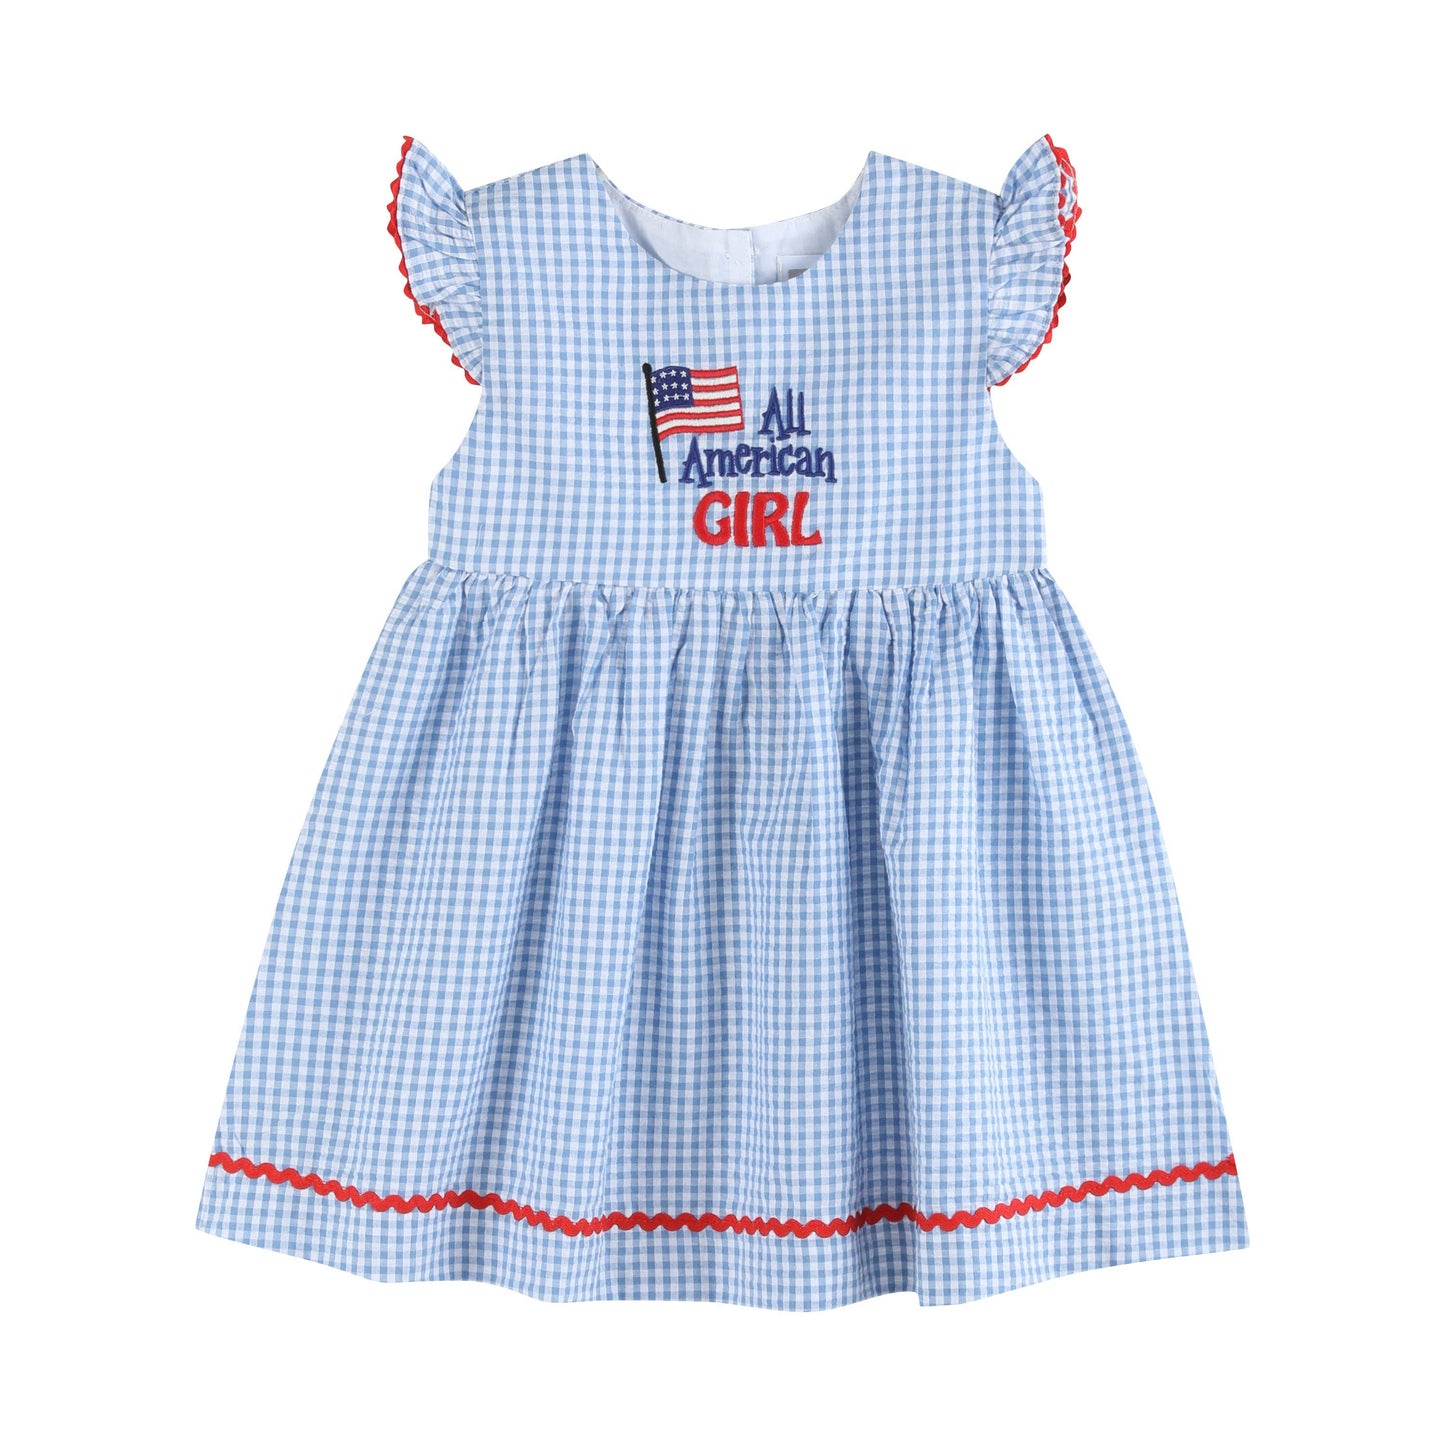 All American Girl' Blue Gingham Dress